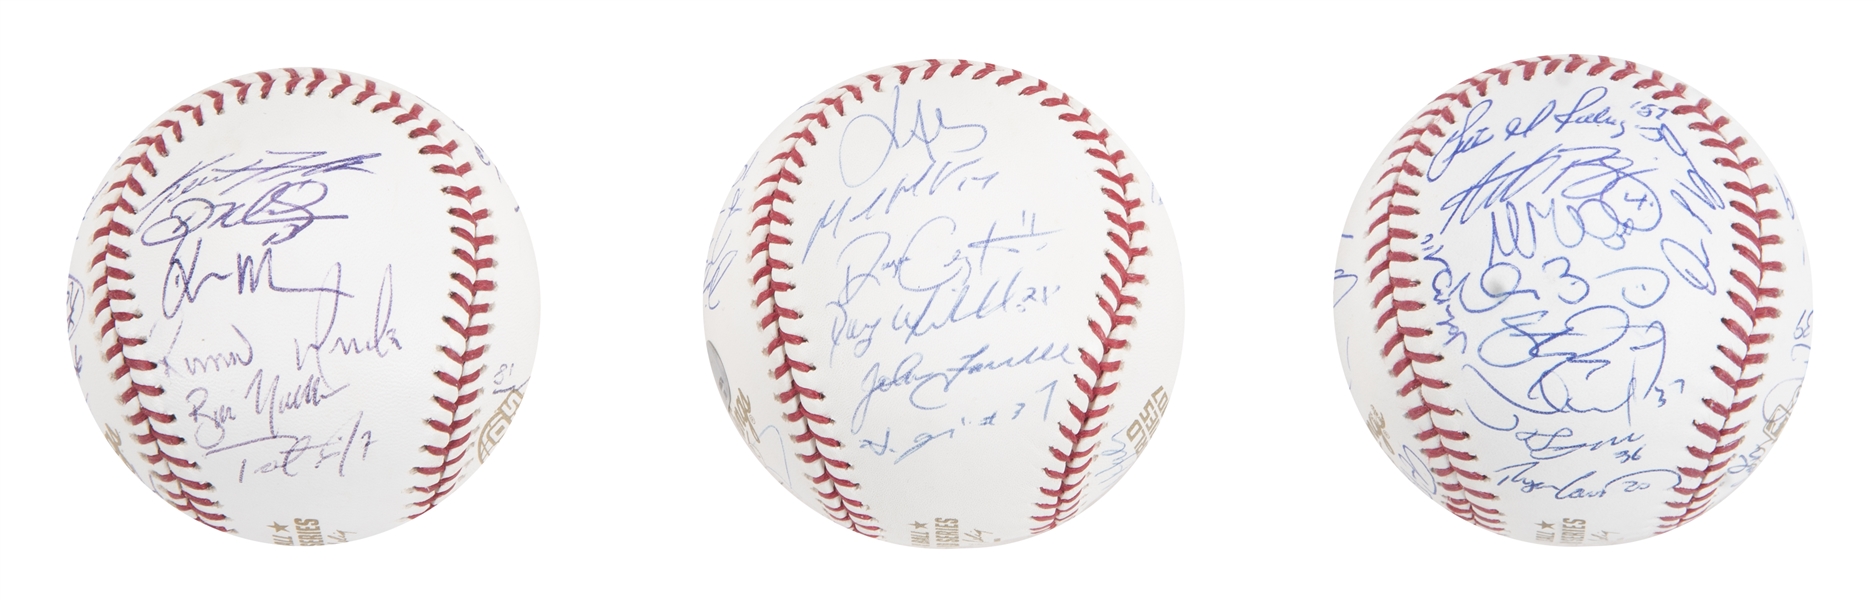 Jon Lester Signed OML Baseball (Beckett)